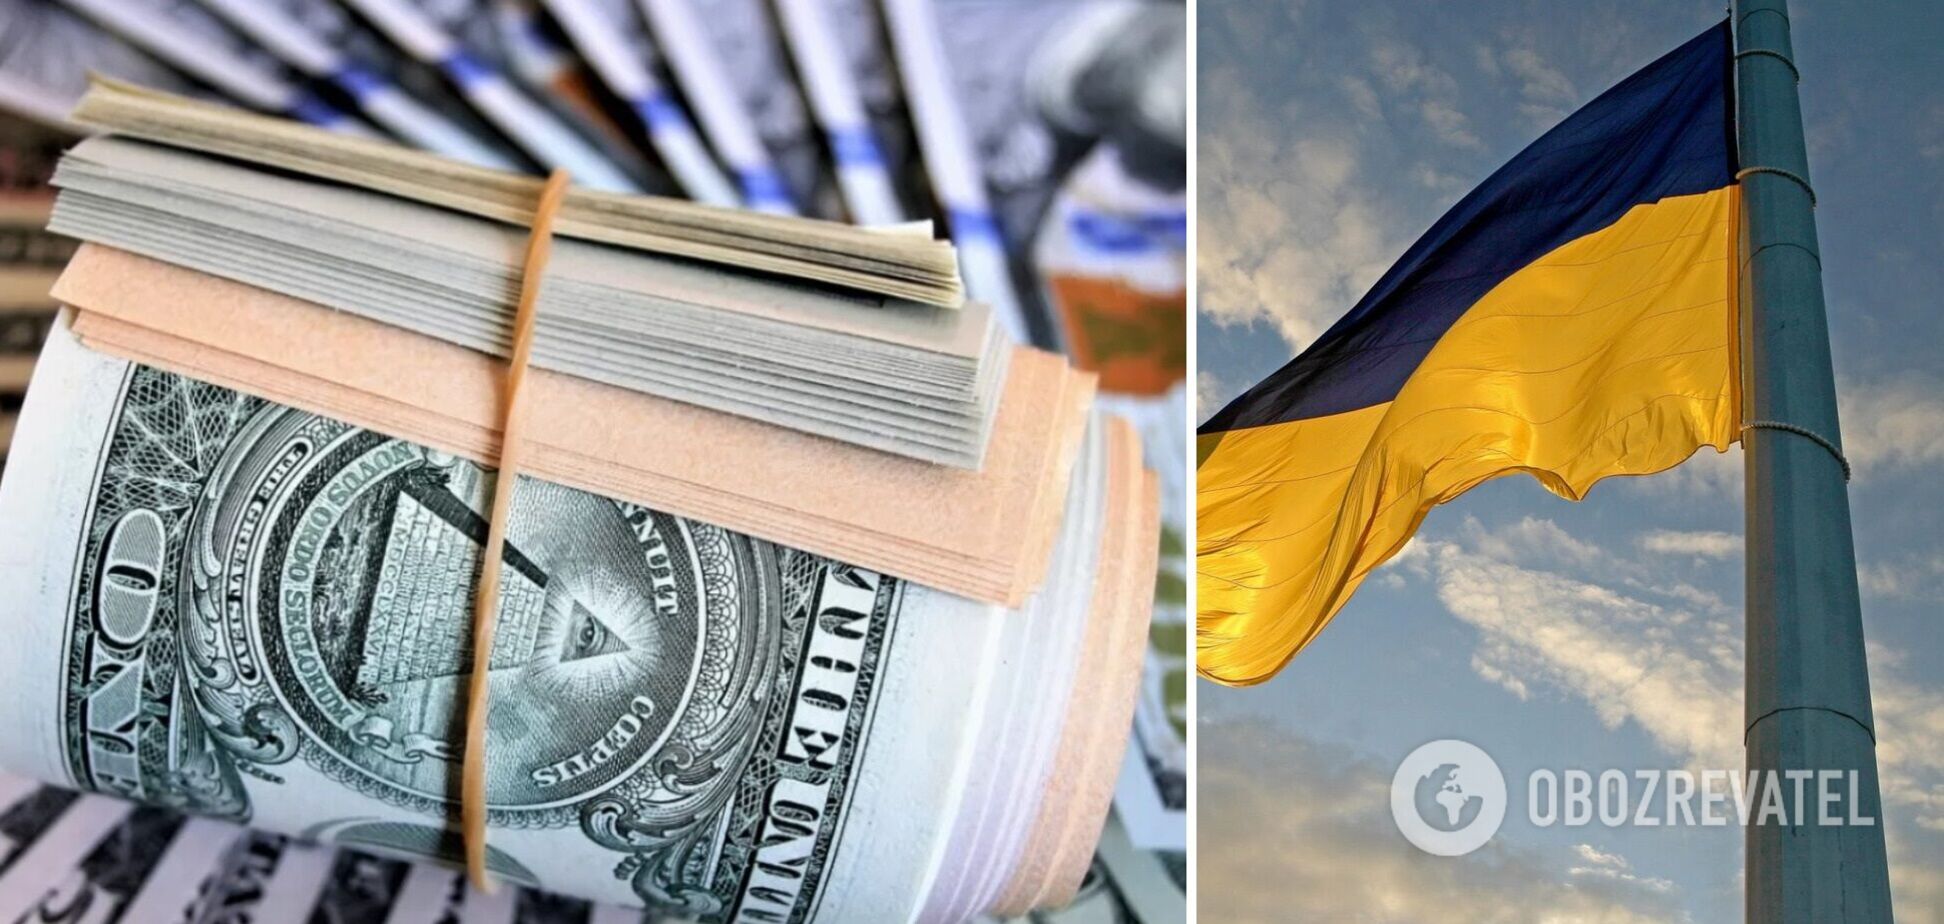 Офіційних мільйонерів в Україні побільшало